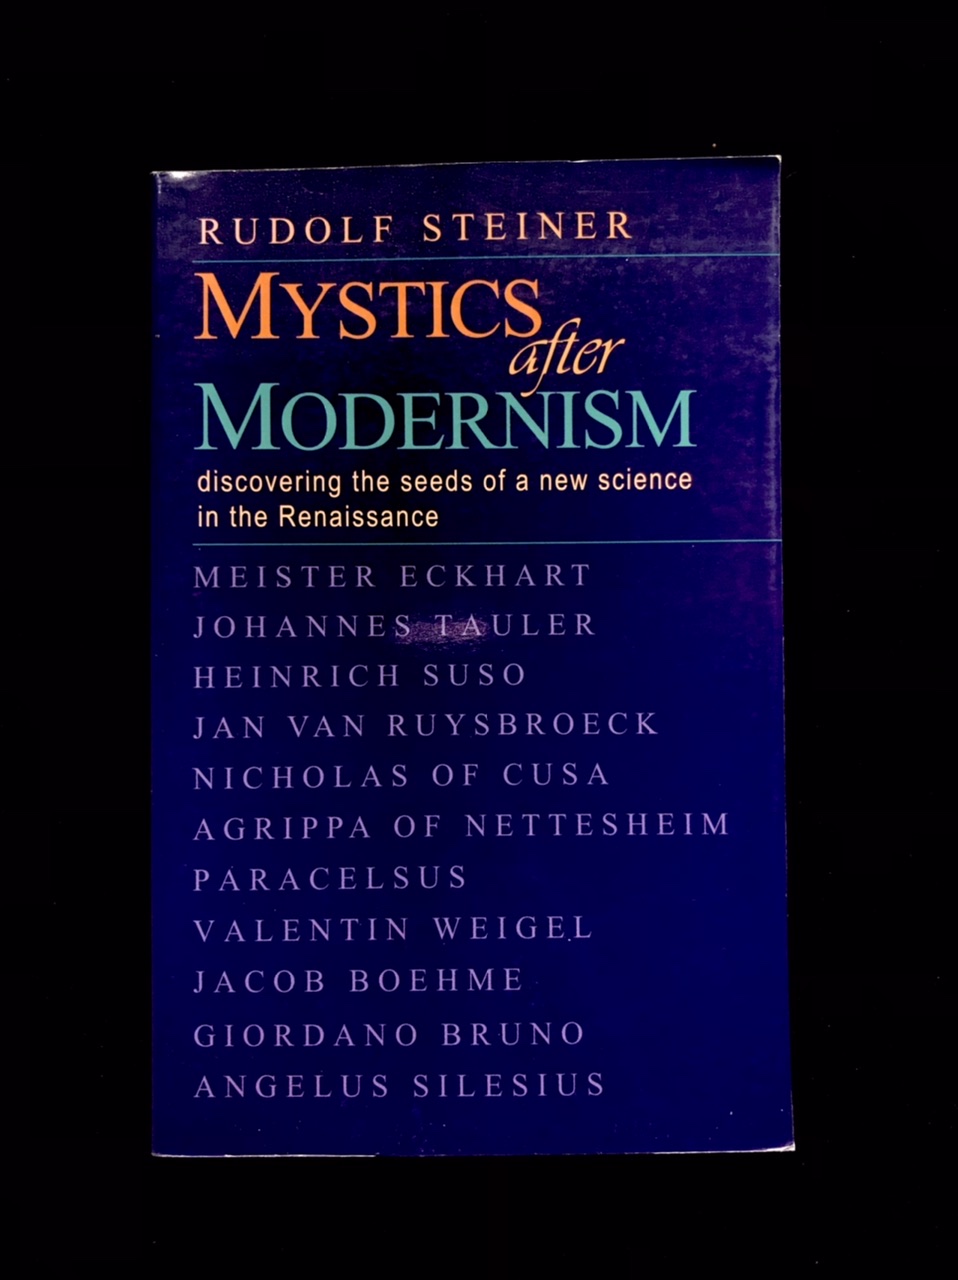 Mystics After Modernism by Rudolf Steiner